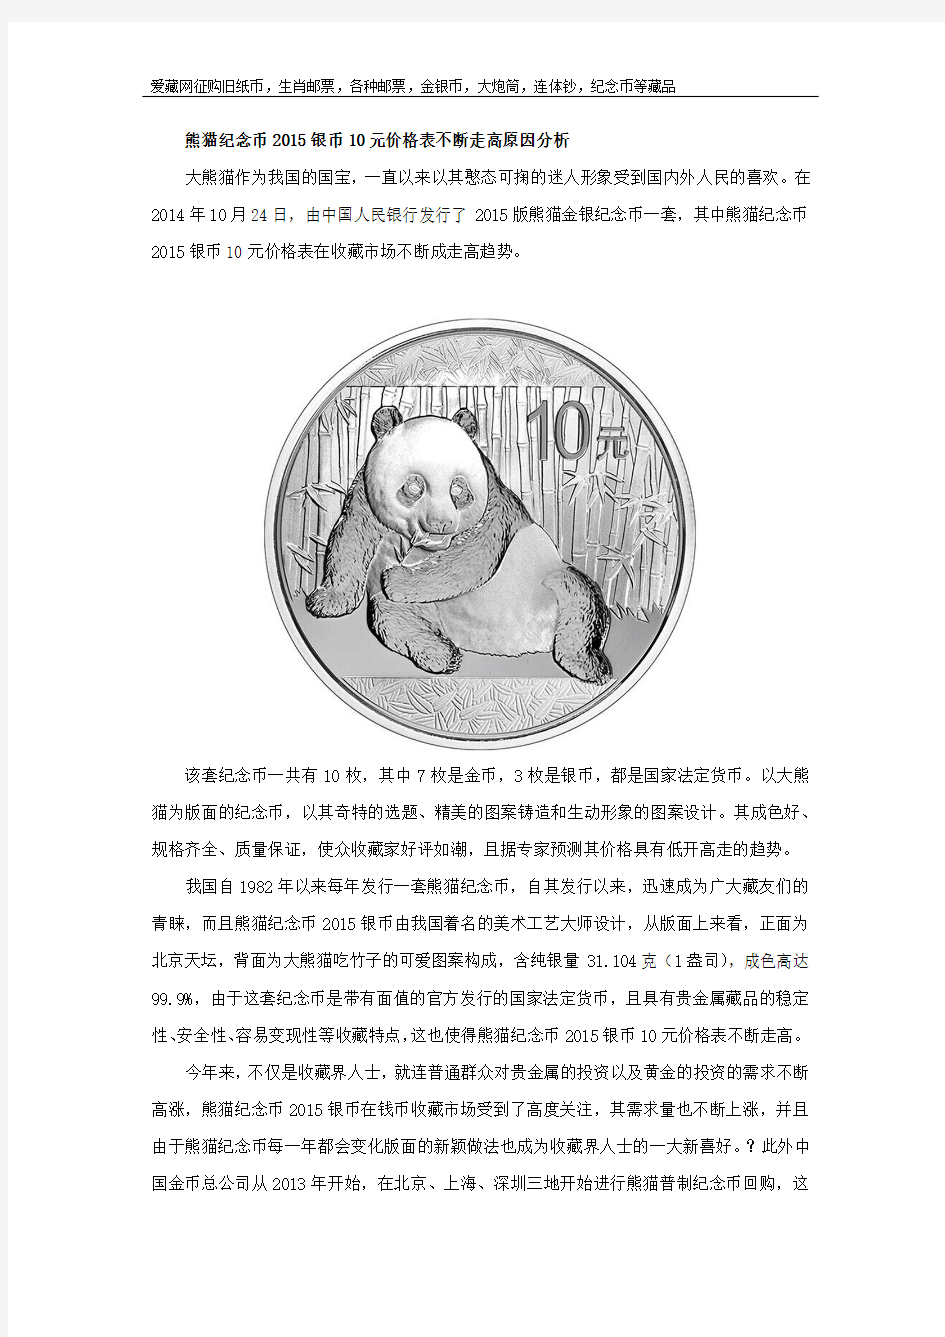 熊猫纪念币2015银币10元价格表不断走高原因分析